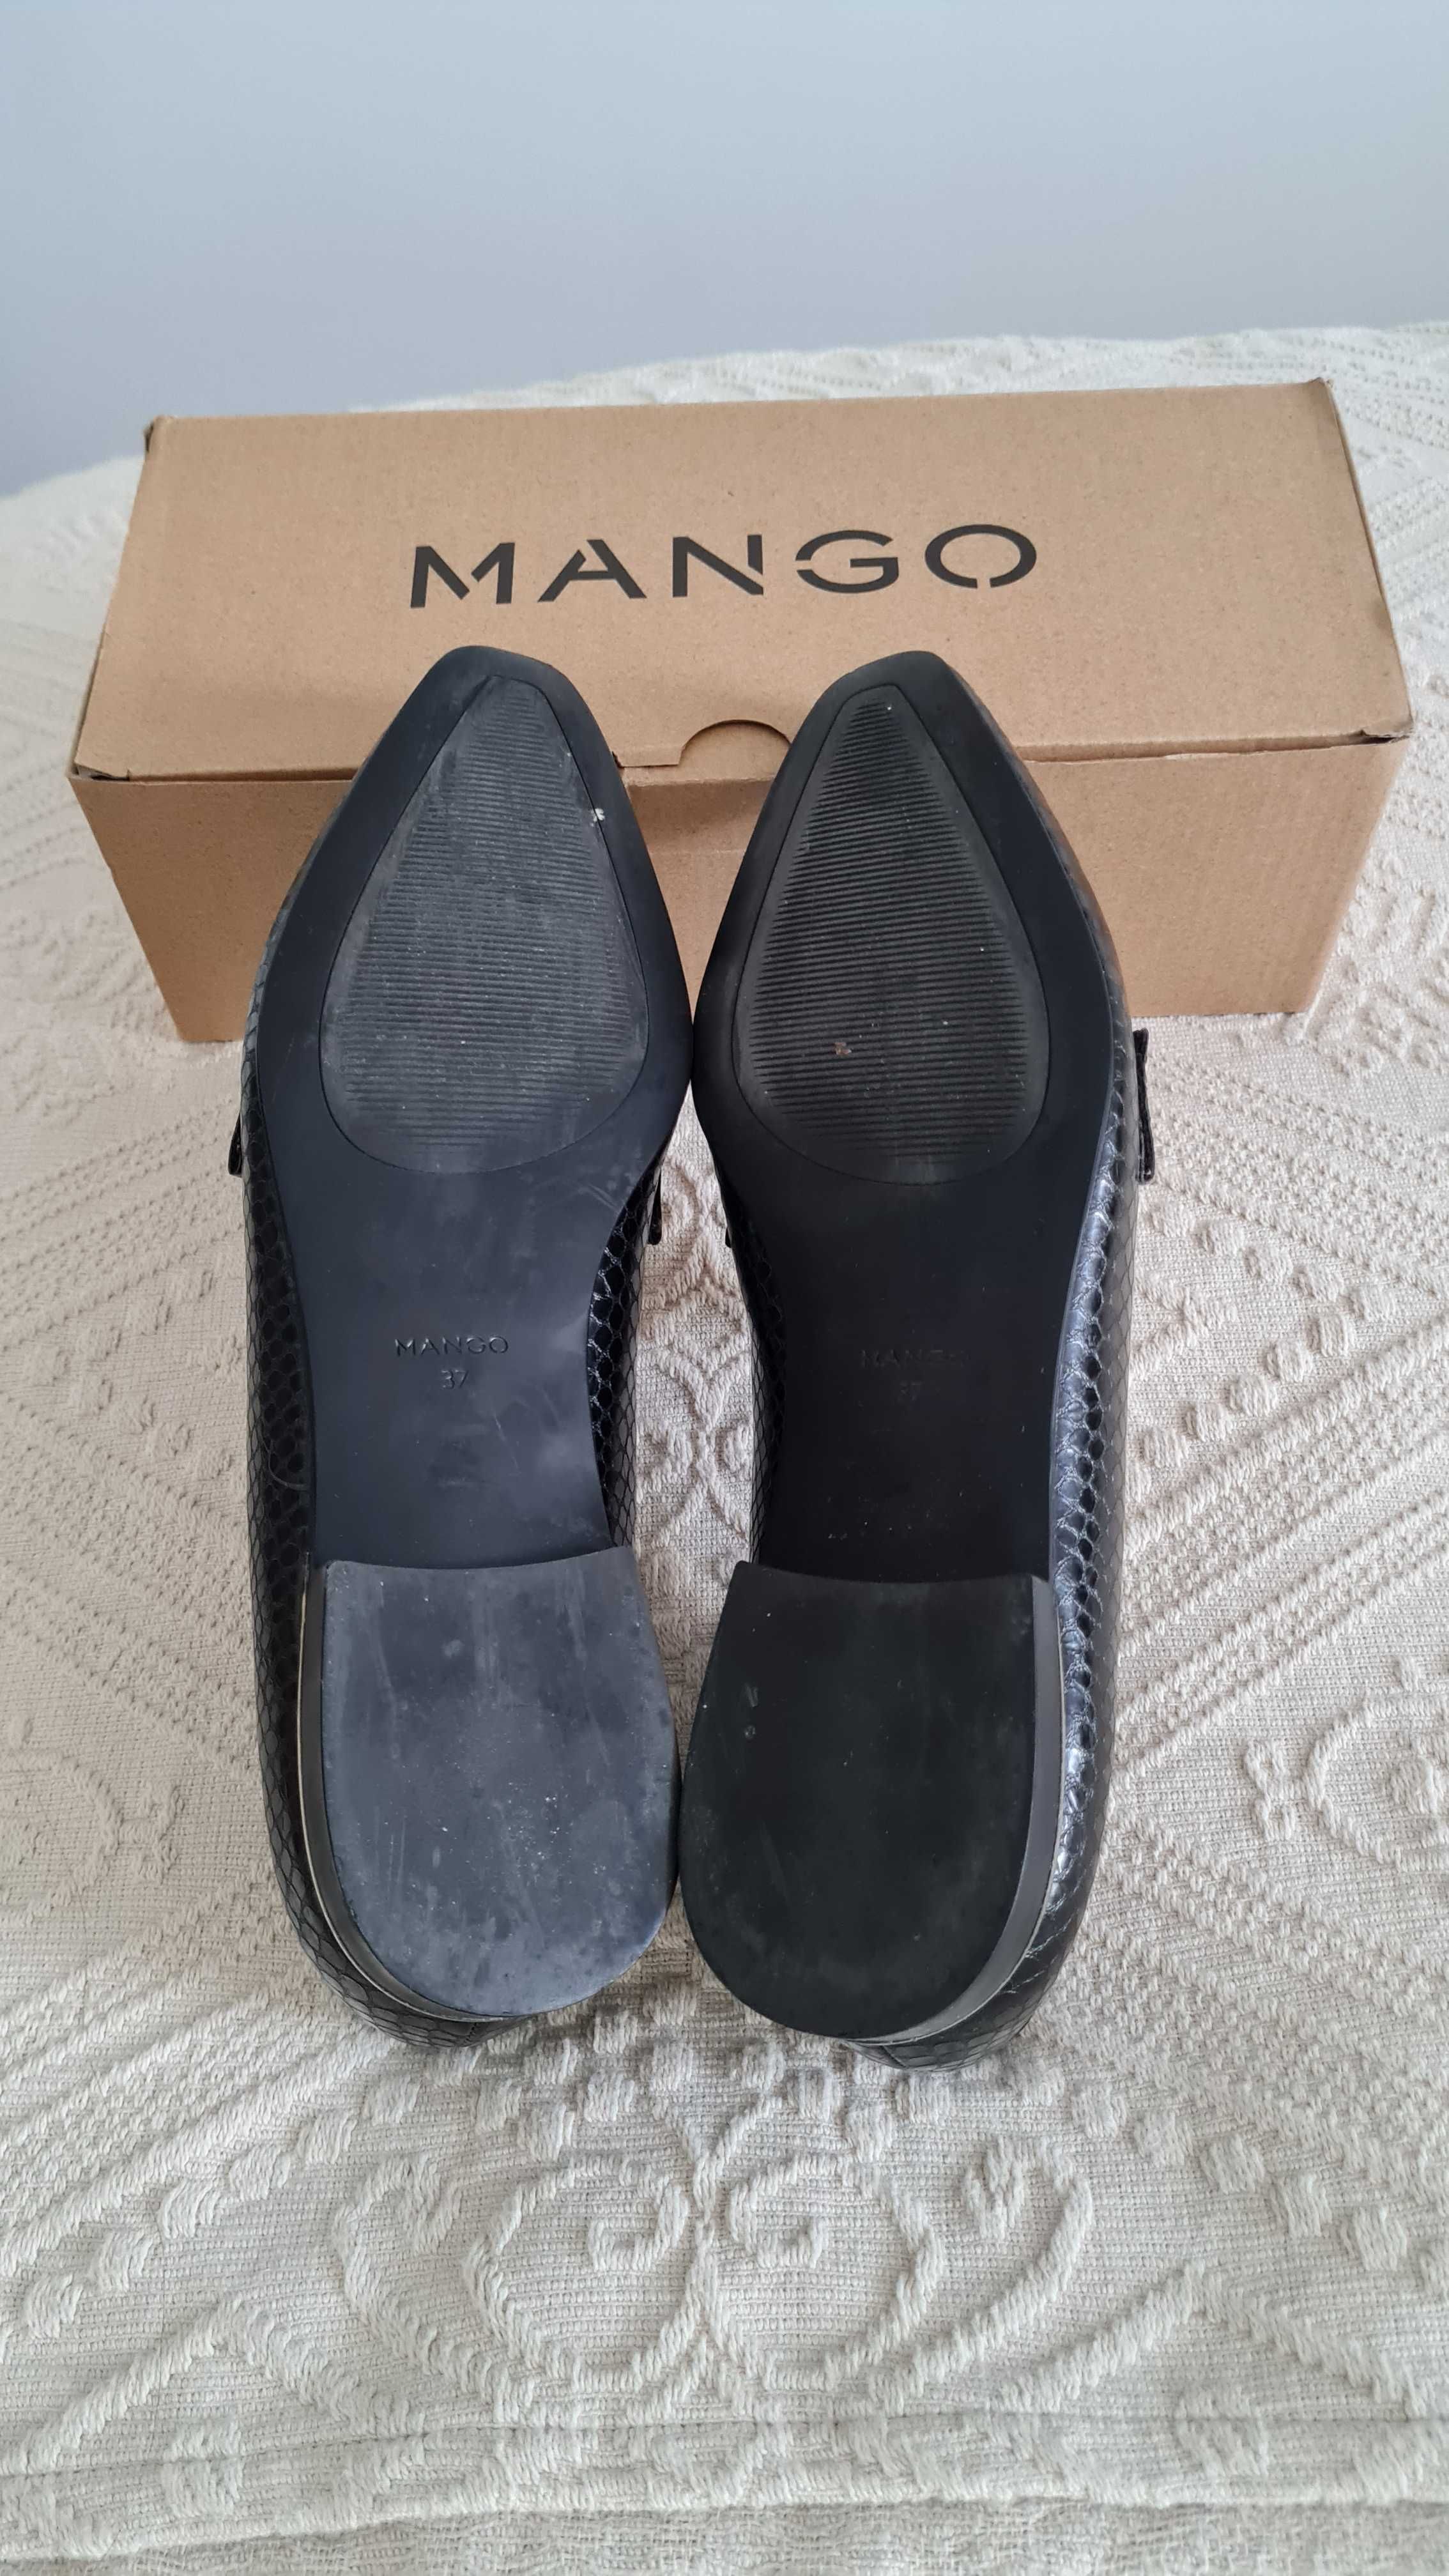 Sapatos Senhora Mango